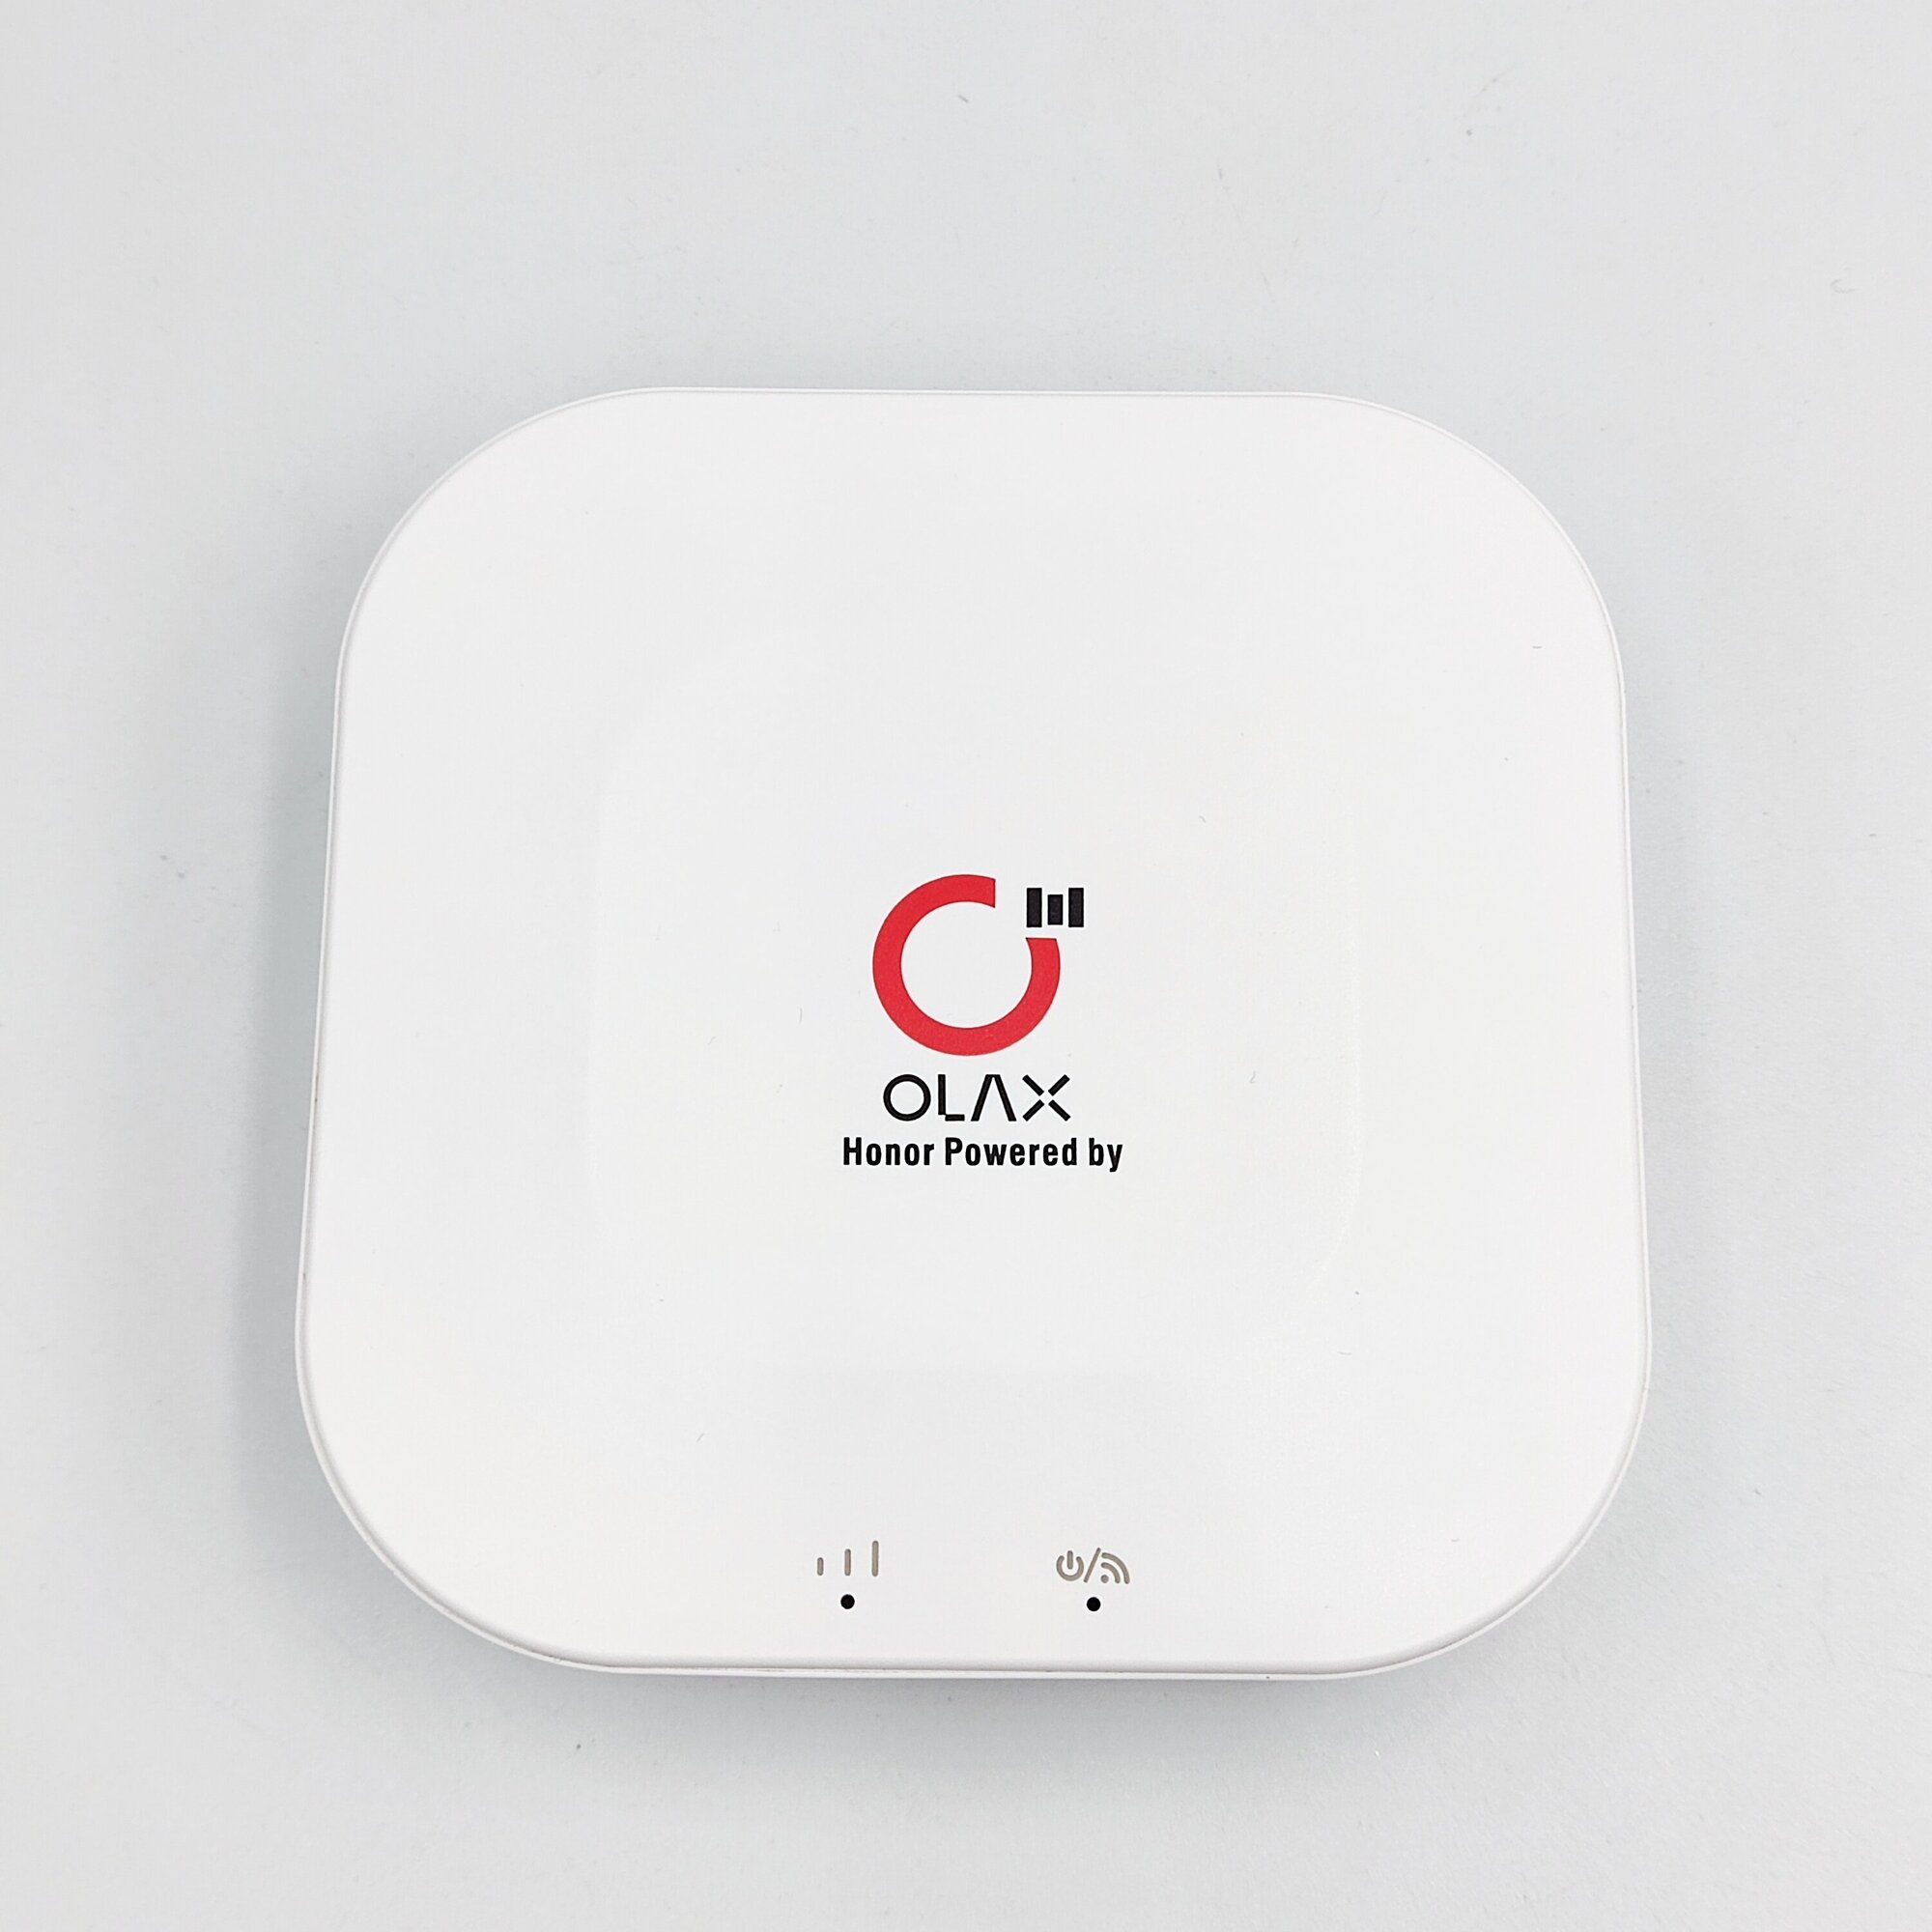 4G мобильный Wi-Fi роутер Olax mt30, 4000 mAh, работает со всеми операторами, любые тарифы, смена IMEI, TTL